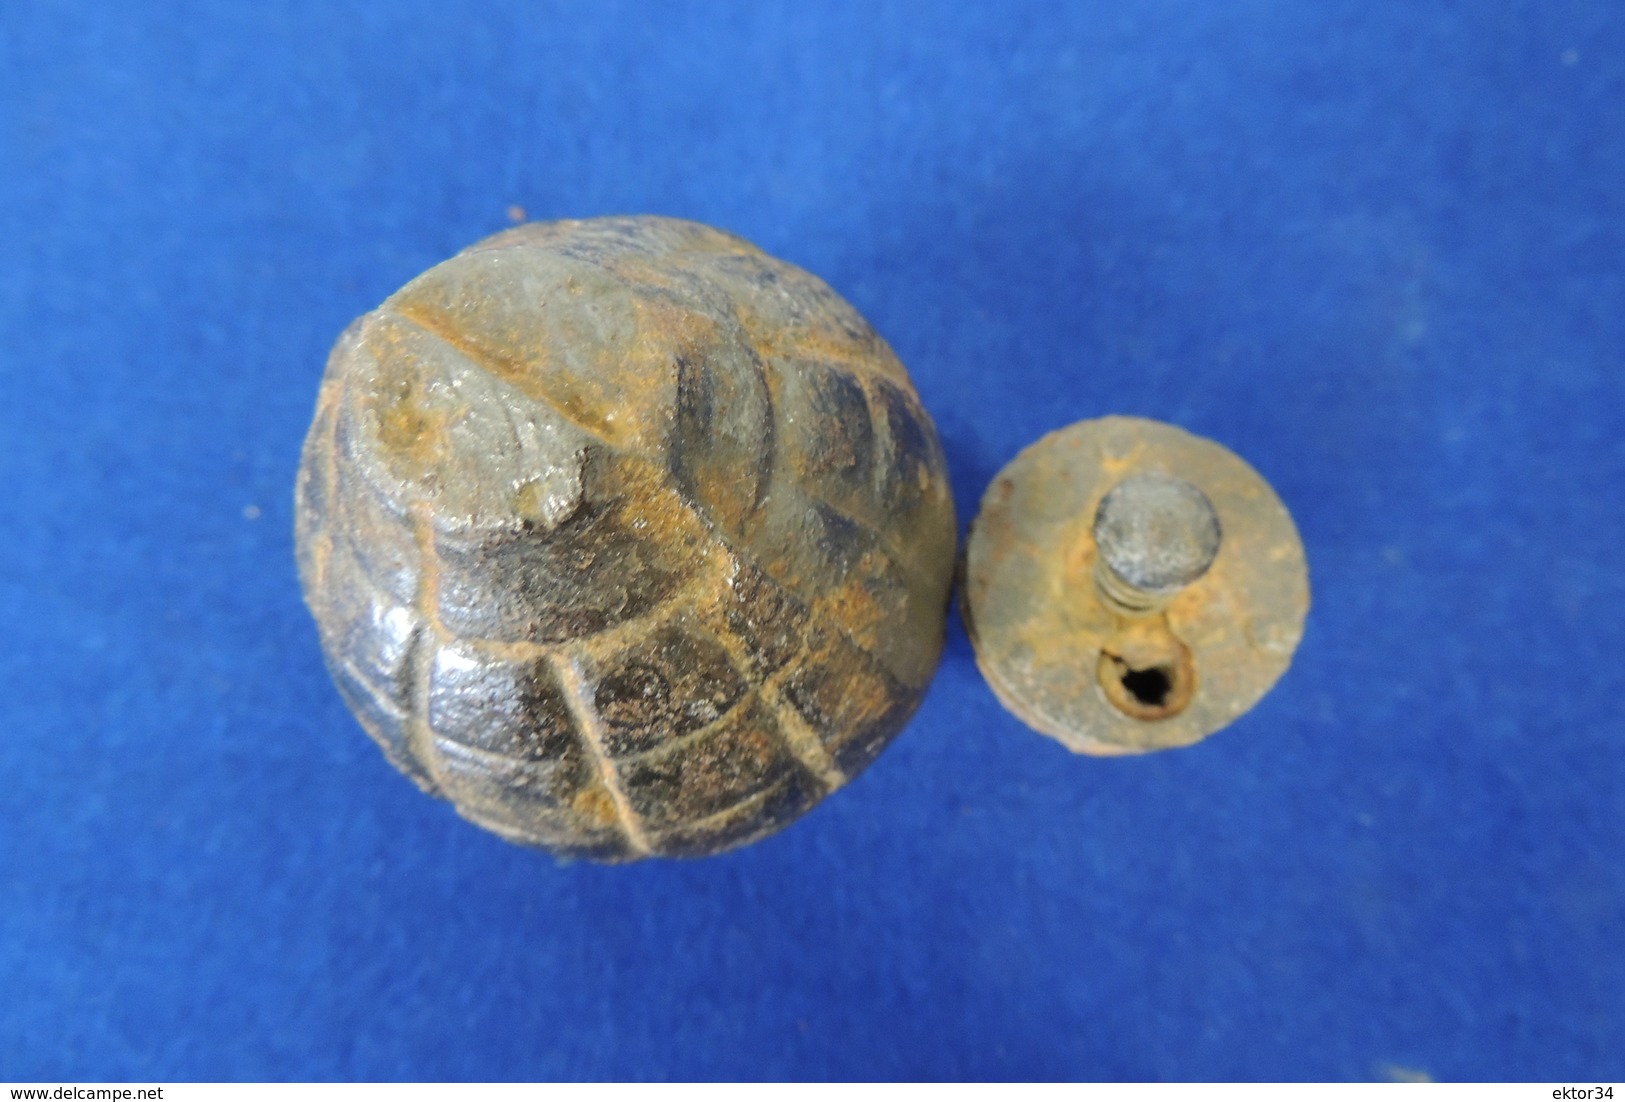 Belle grenade française, FOUG ou citron, complète et totalement inerte. WWI, 14-18